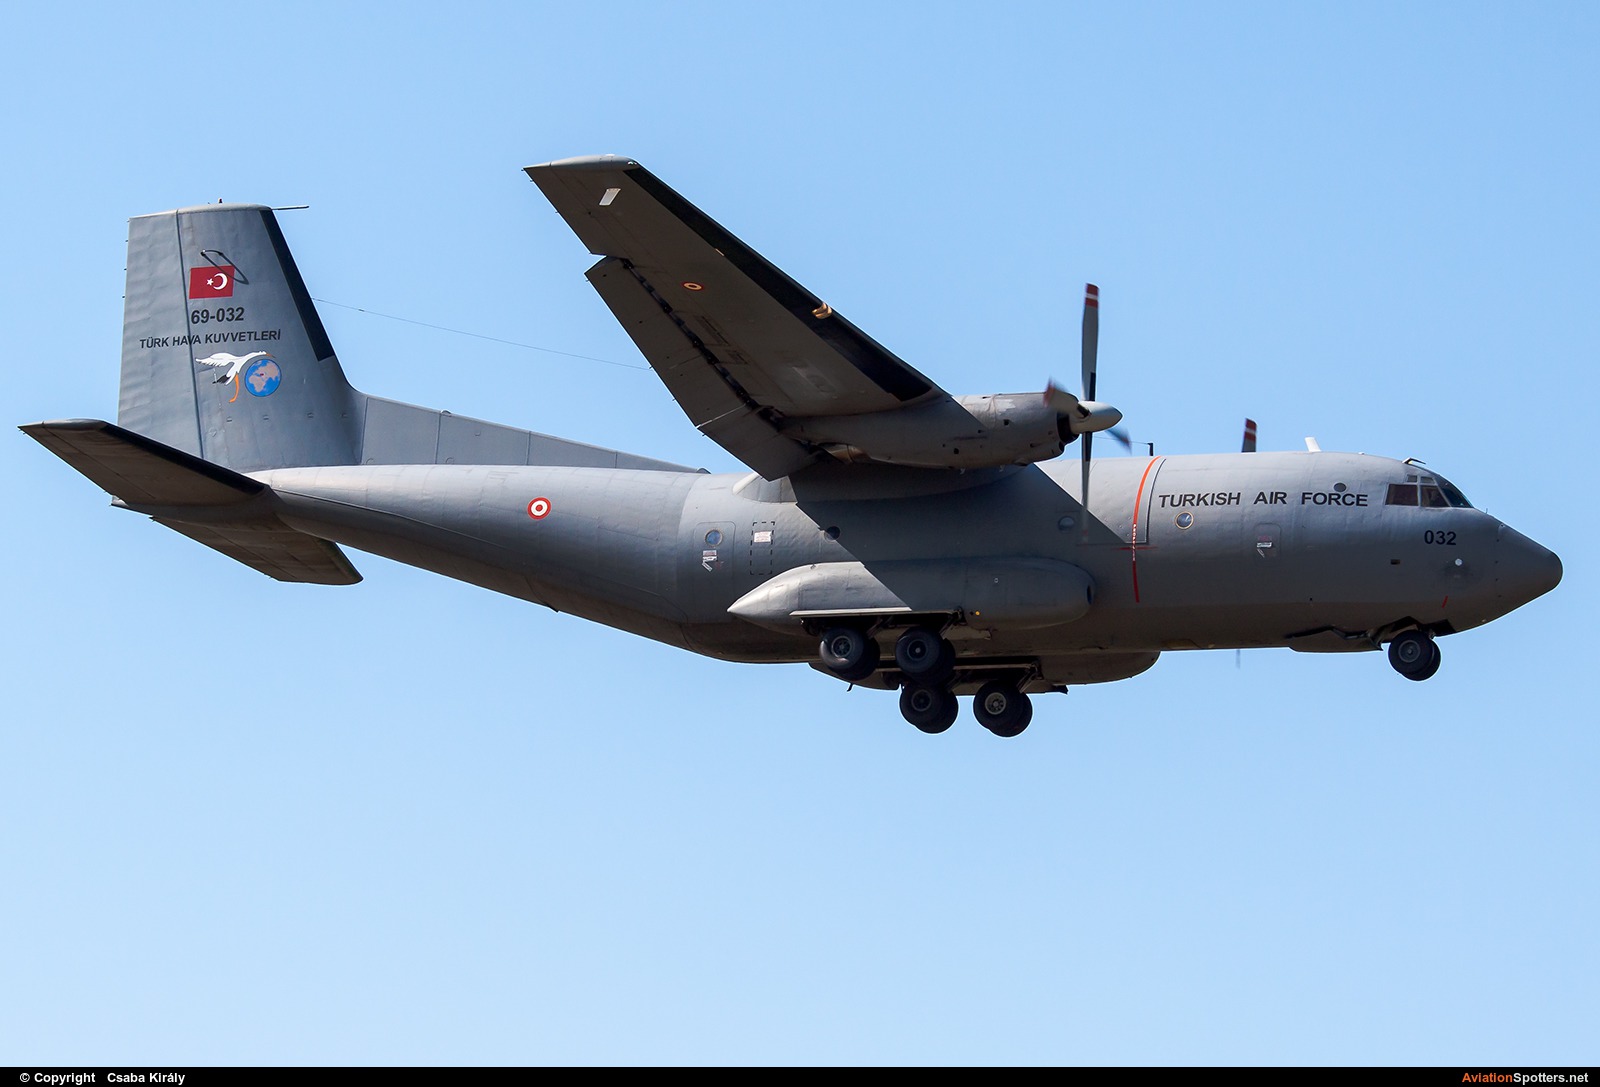 Turkey - Air Force  -  C-160D  (69-032) By Csaba Király (Csaba Kiraly)